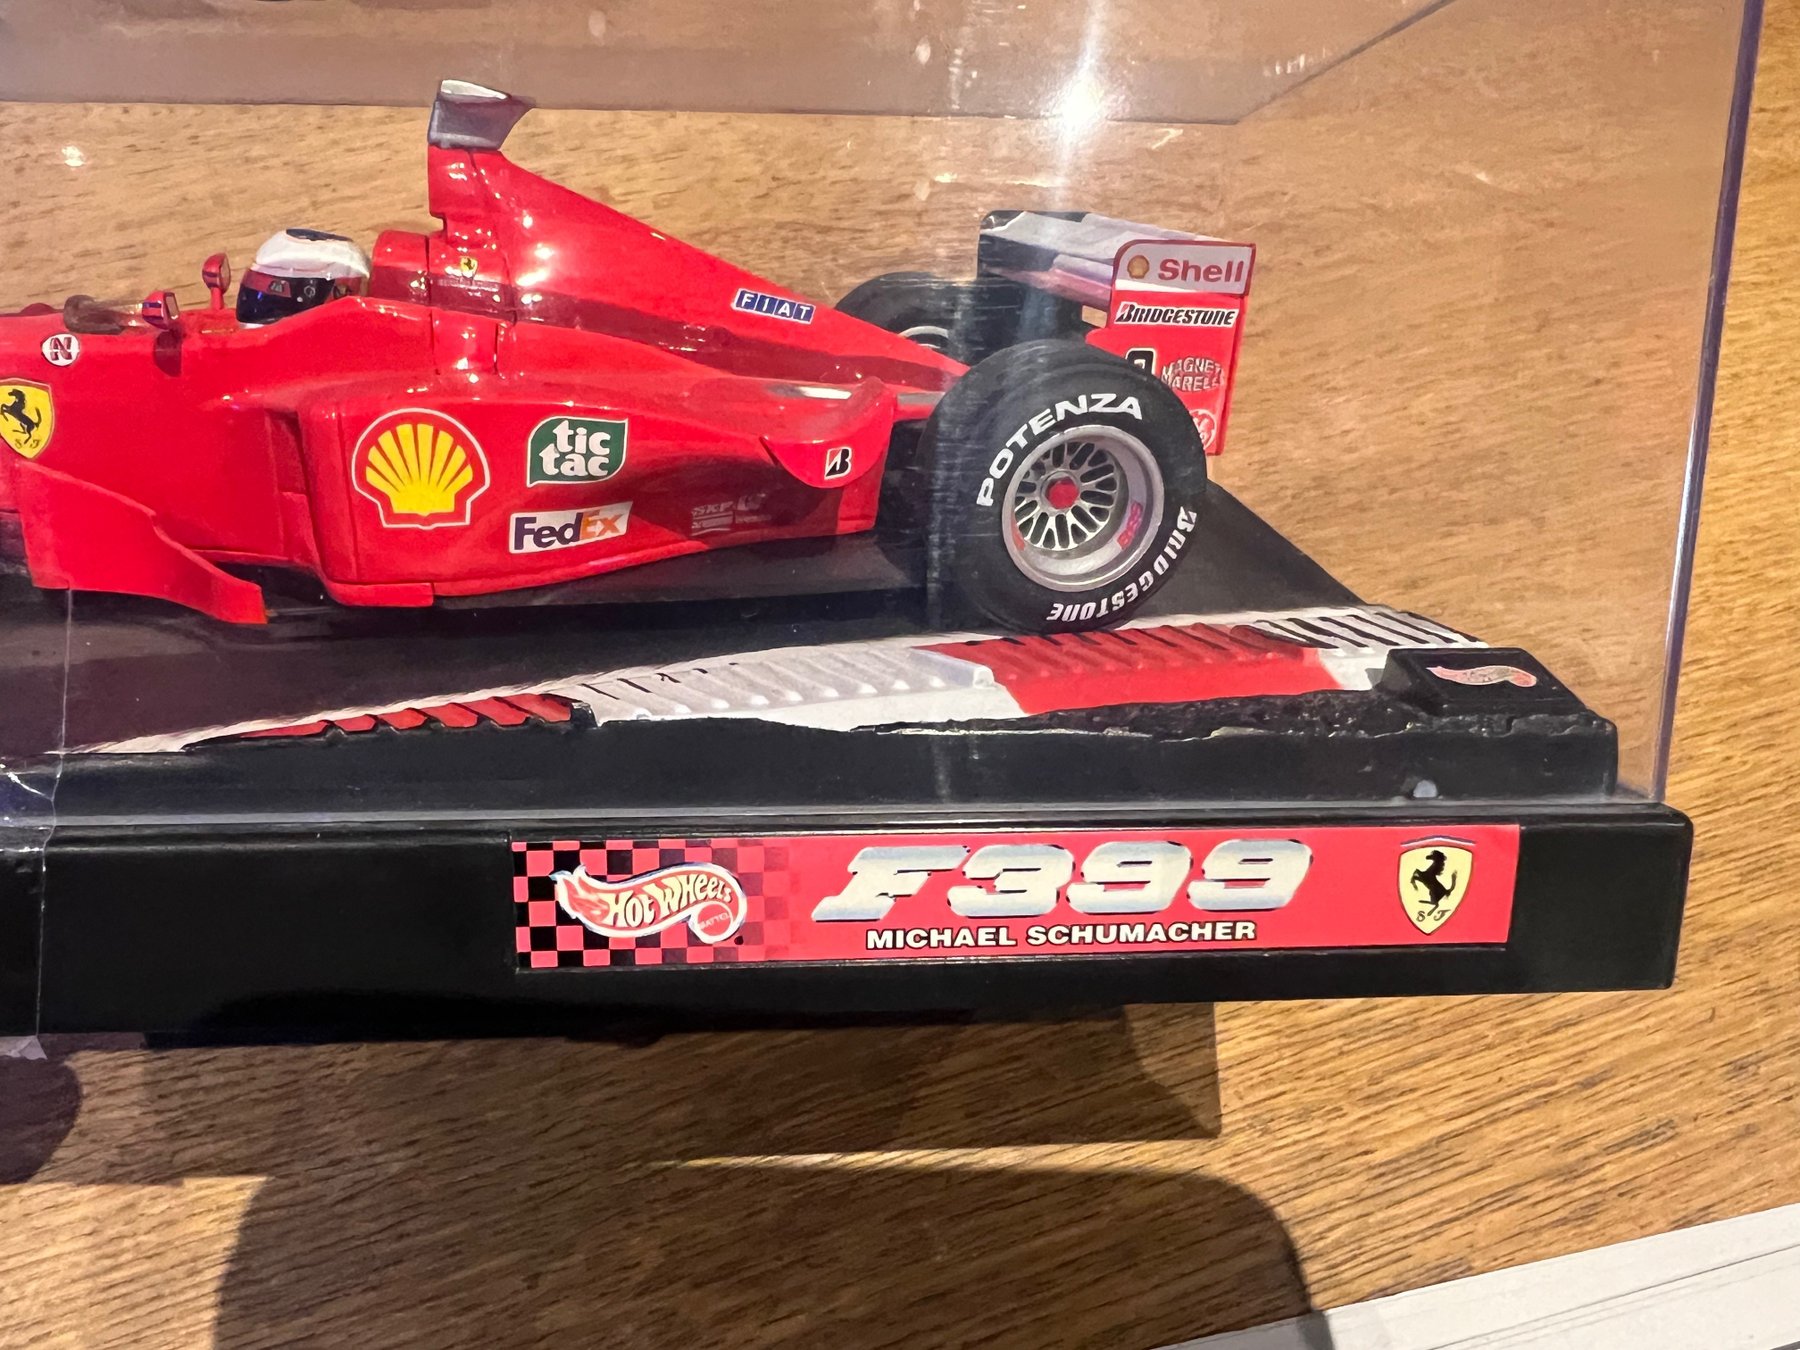 Hot Wheels - 1:18 - Ferrari F399 M. Schumacher - Catawiki